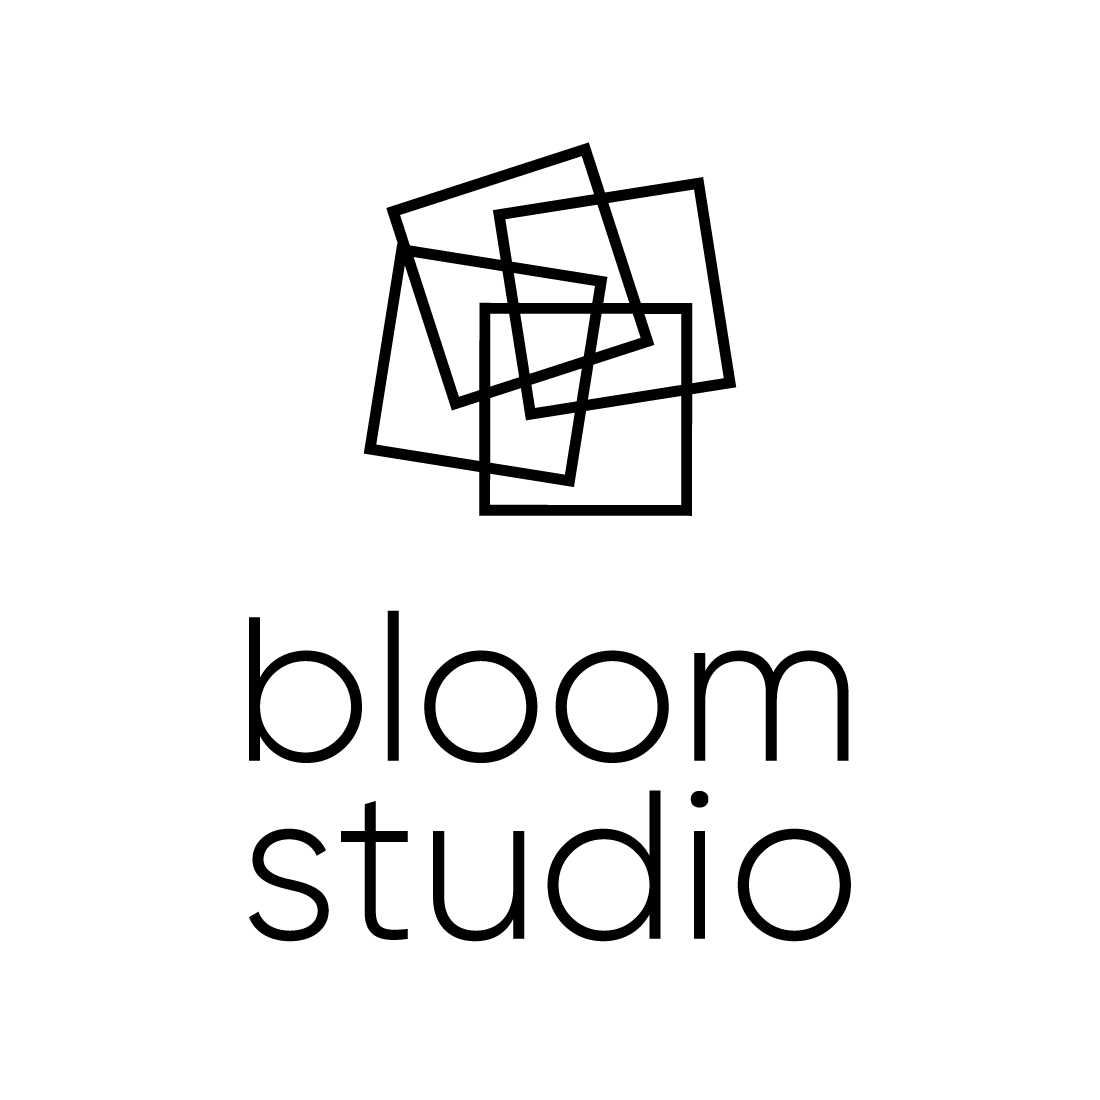 Das Logo von der Firma Bloom Studio. Hintergrundfarbe in schwarz, das Logo in weiss.